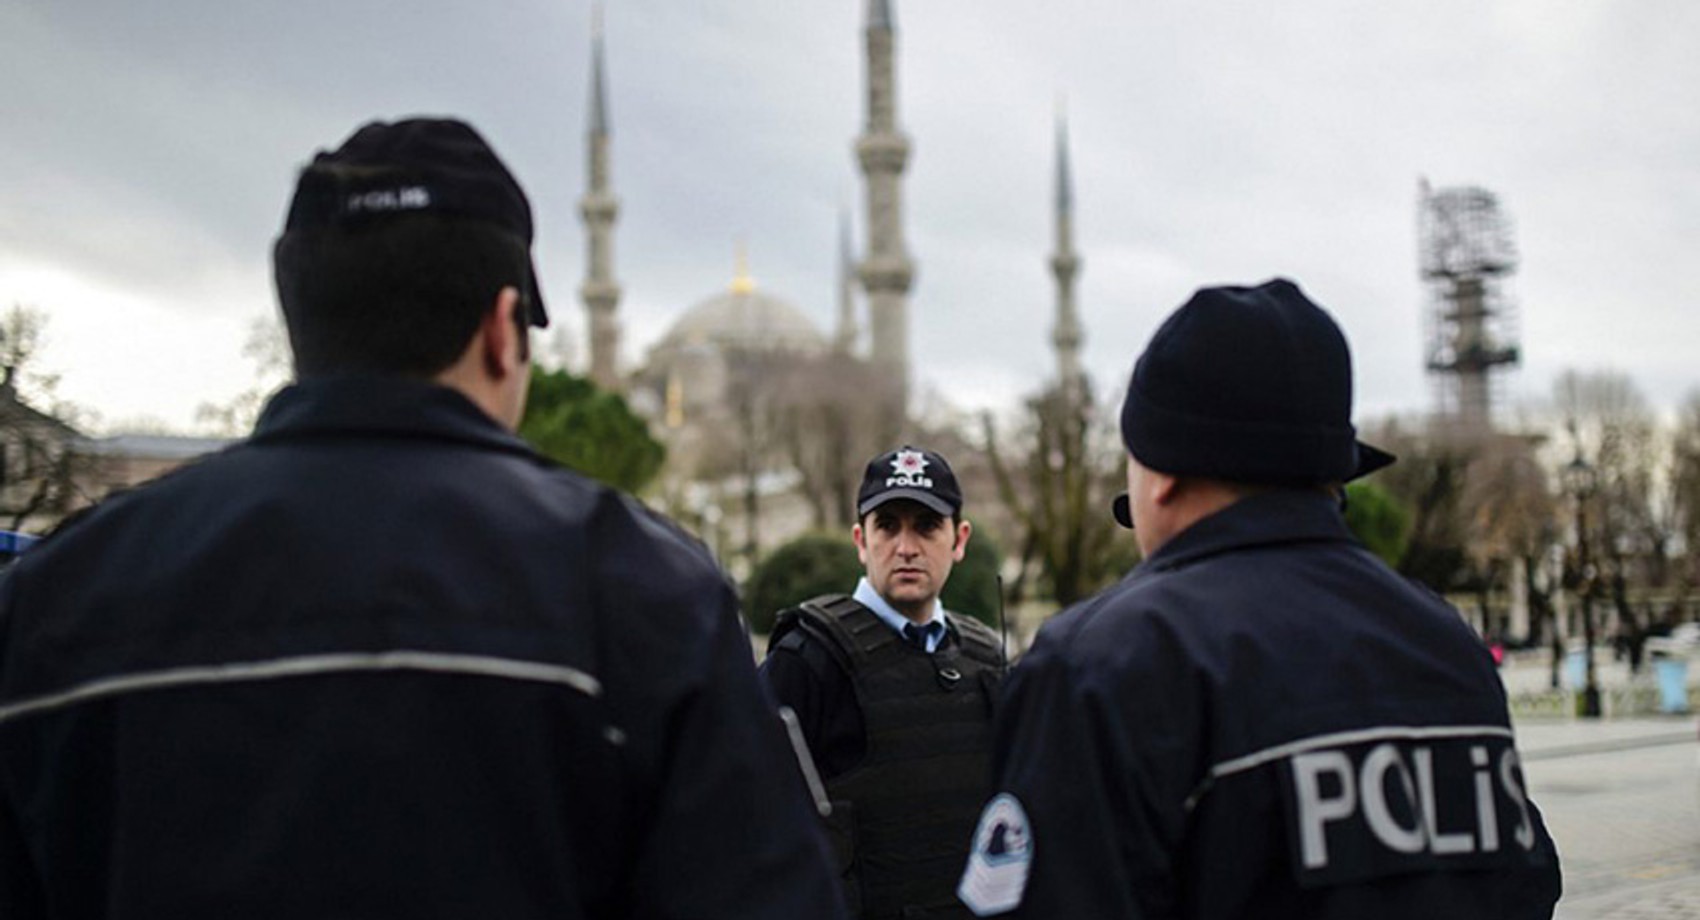 У Туреччині затримали шість іноземців, підозрюваних у шпигунстві. У них виявили російські паспорти - фото